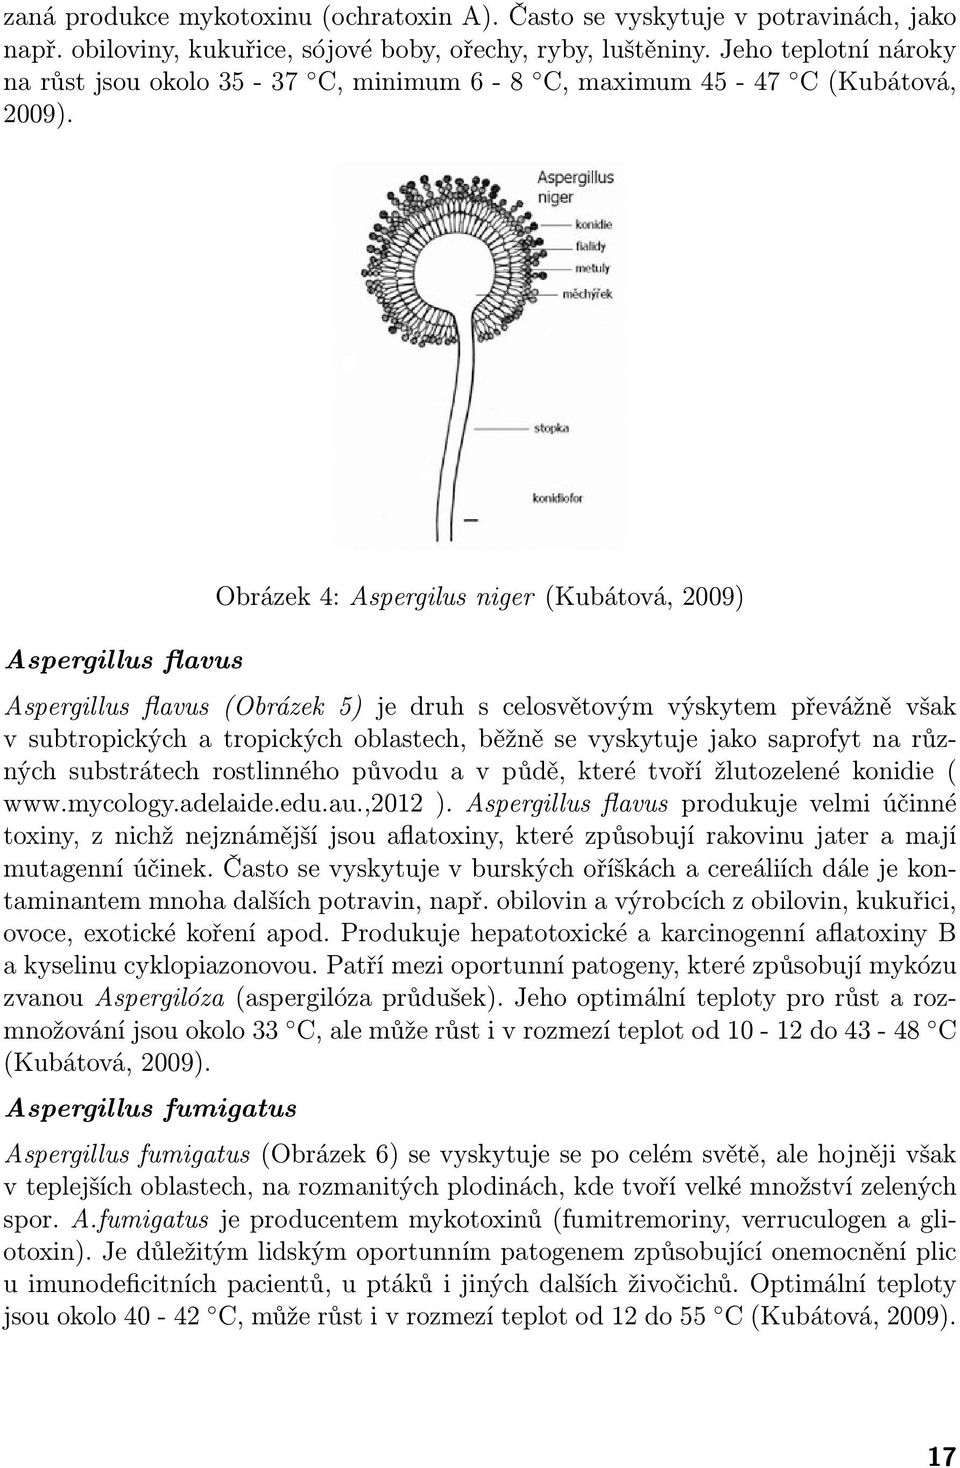 Aspergillus flavus Obrázek 4: Aspergilus niger (Kubátová, 2009) Aspergillus flavus (Obrázek 5) je druh s celosvětovým výskytem převážně však v subtropických a tropických oblastech, běžně se vyskytuje